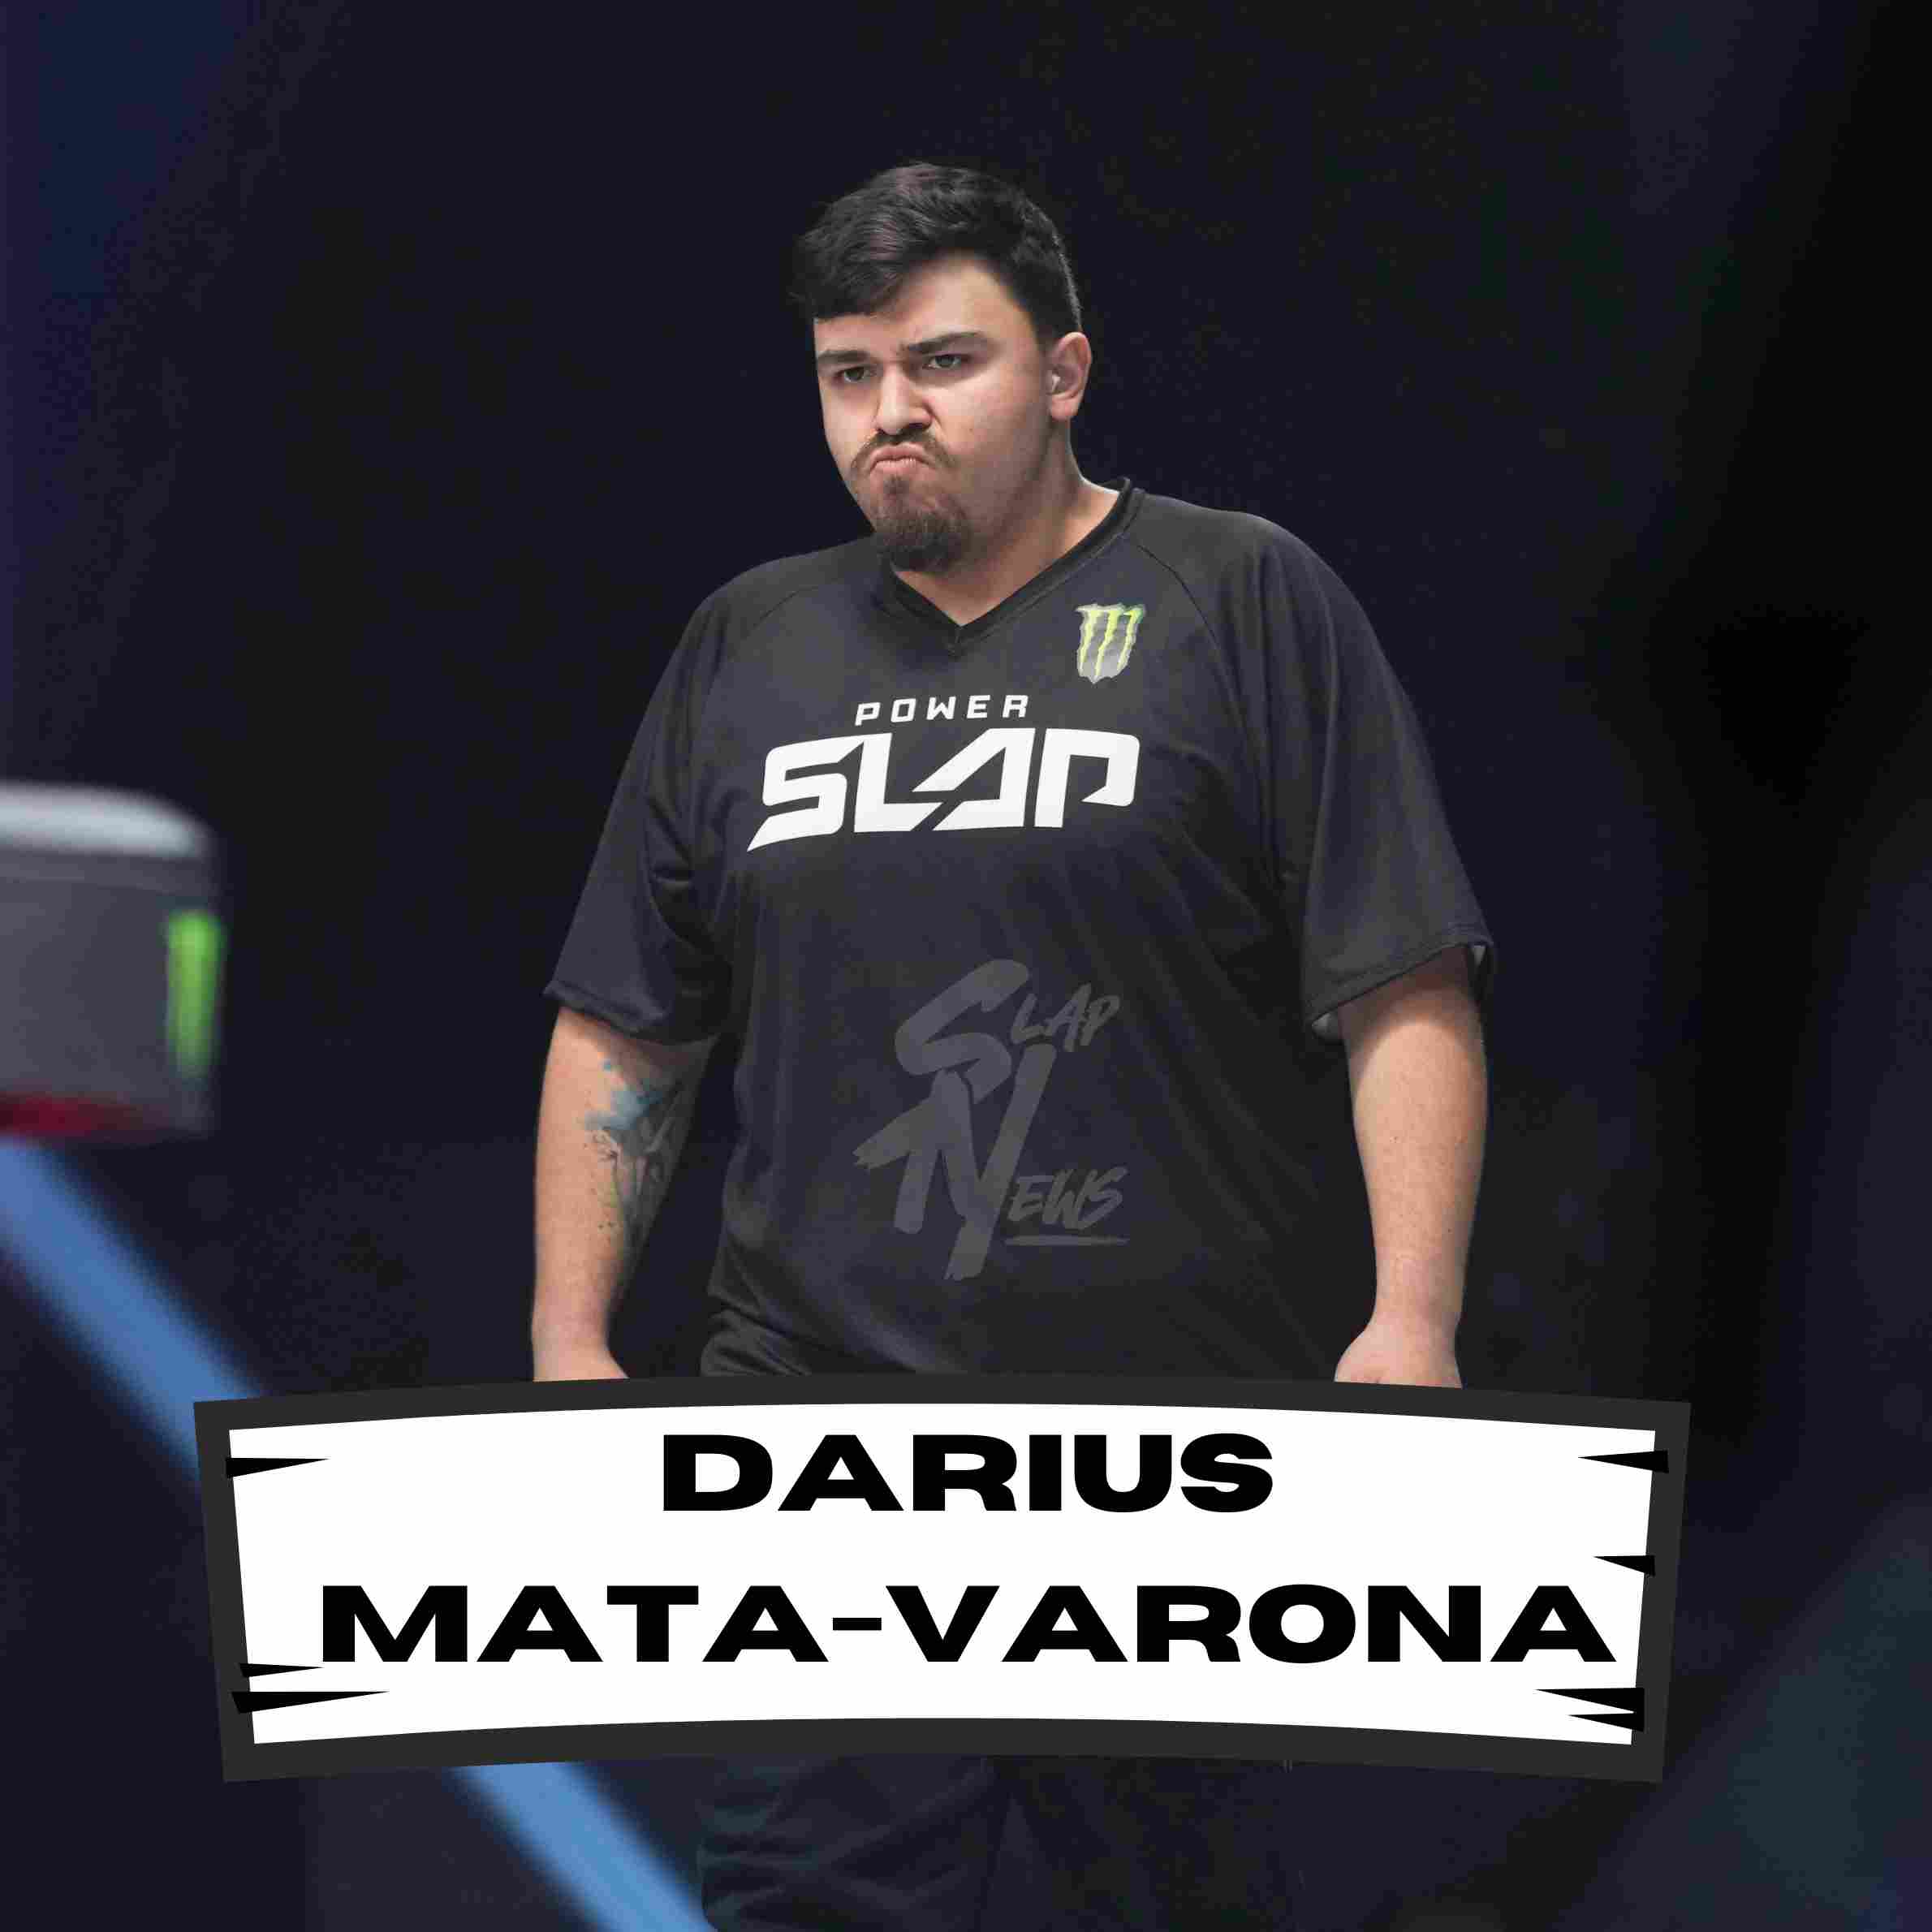 Darius MATA-VARONA | Power Slap | Slap News